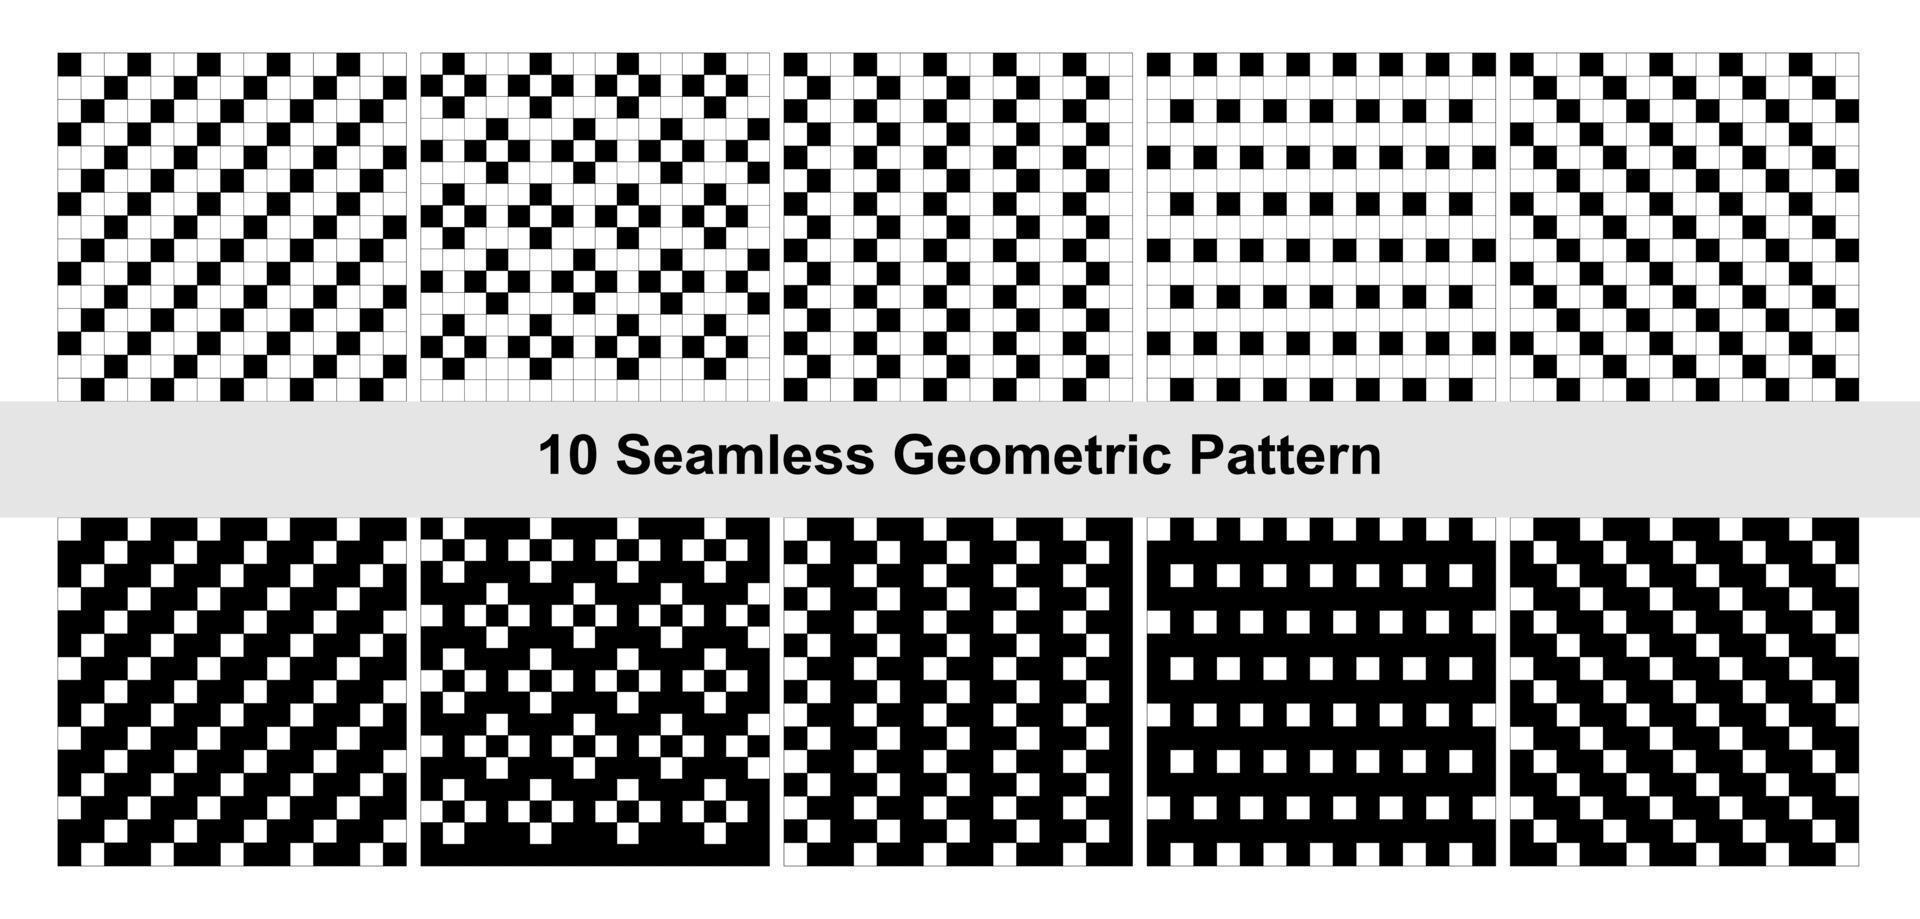 10 meetkundig patroon in zwart en wit. vector